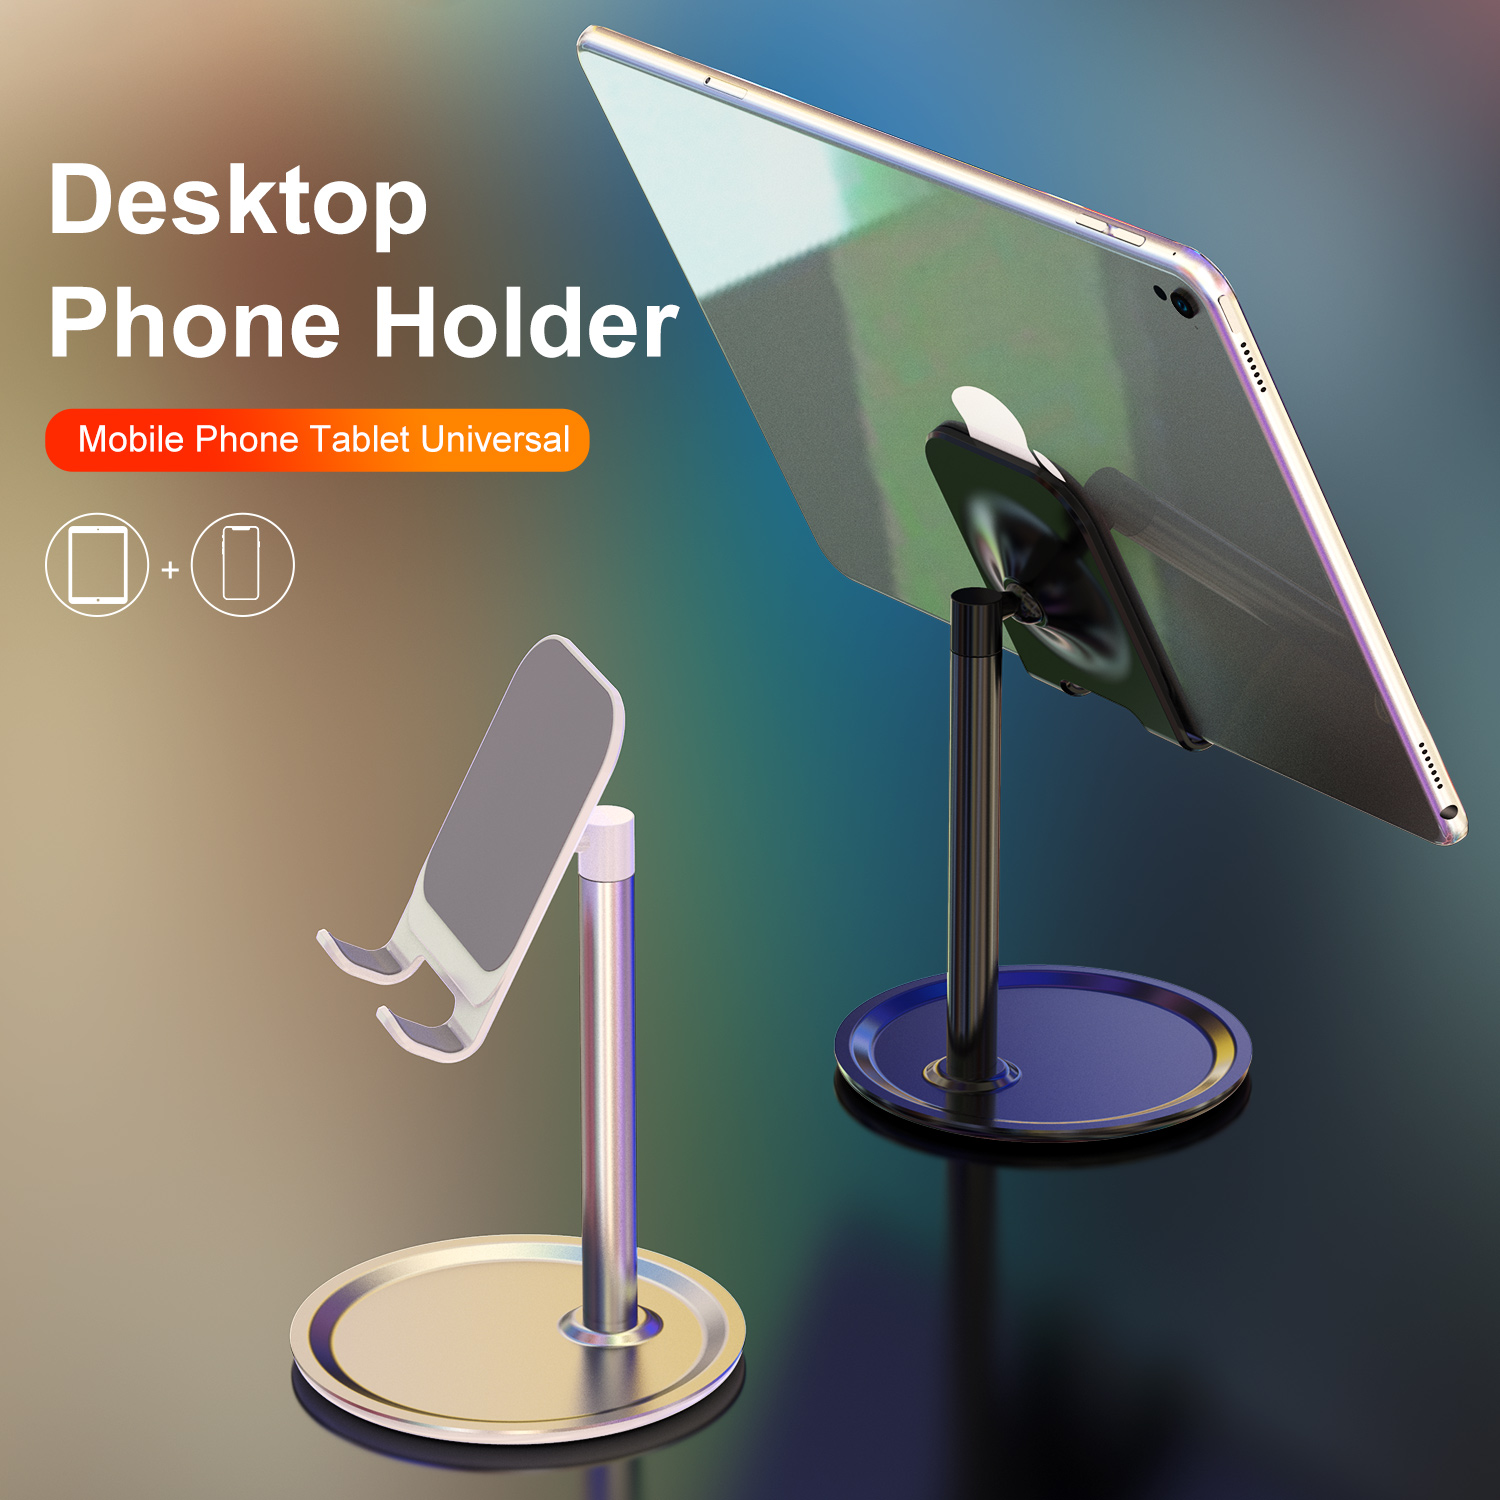 Uslion-Desktop-Phone-Holder-Universal-Tablet-Phone-Mount-Bracket-Adjustable-Stand-for-iPhone-Huawei--1709257-2